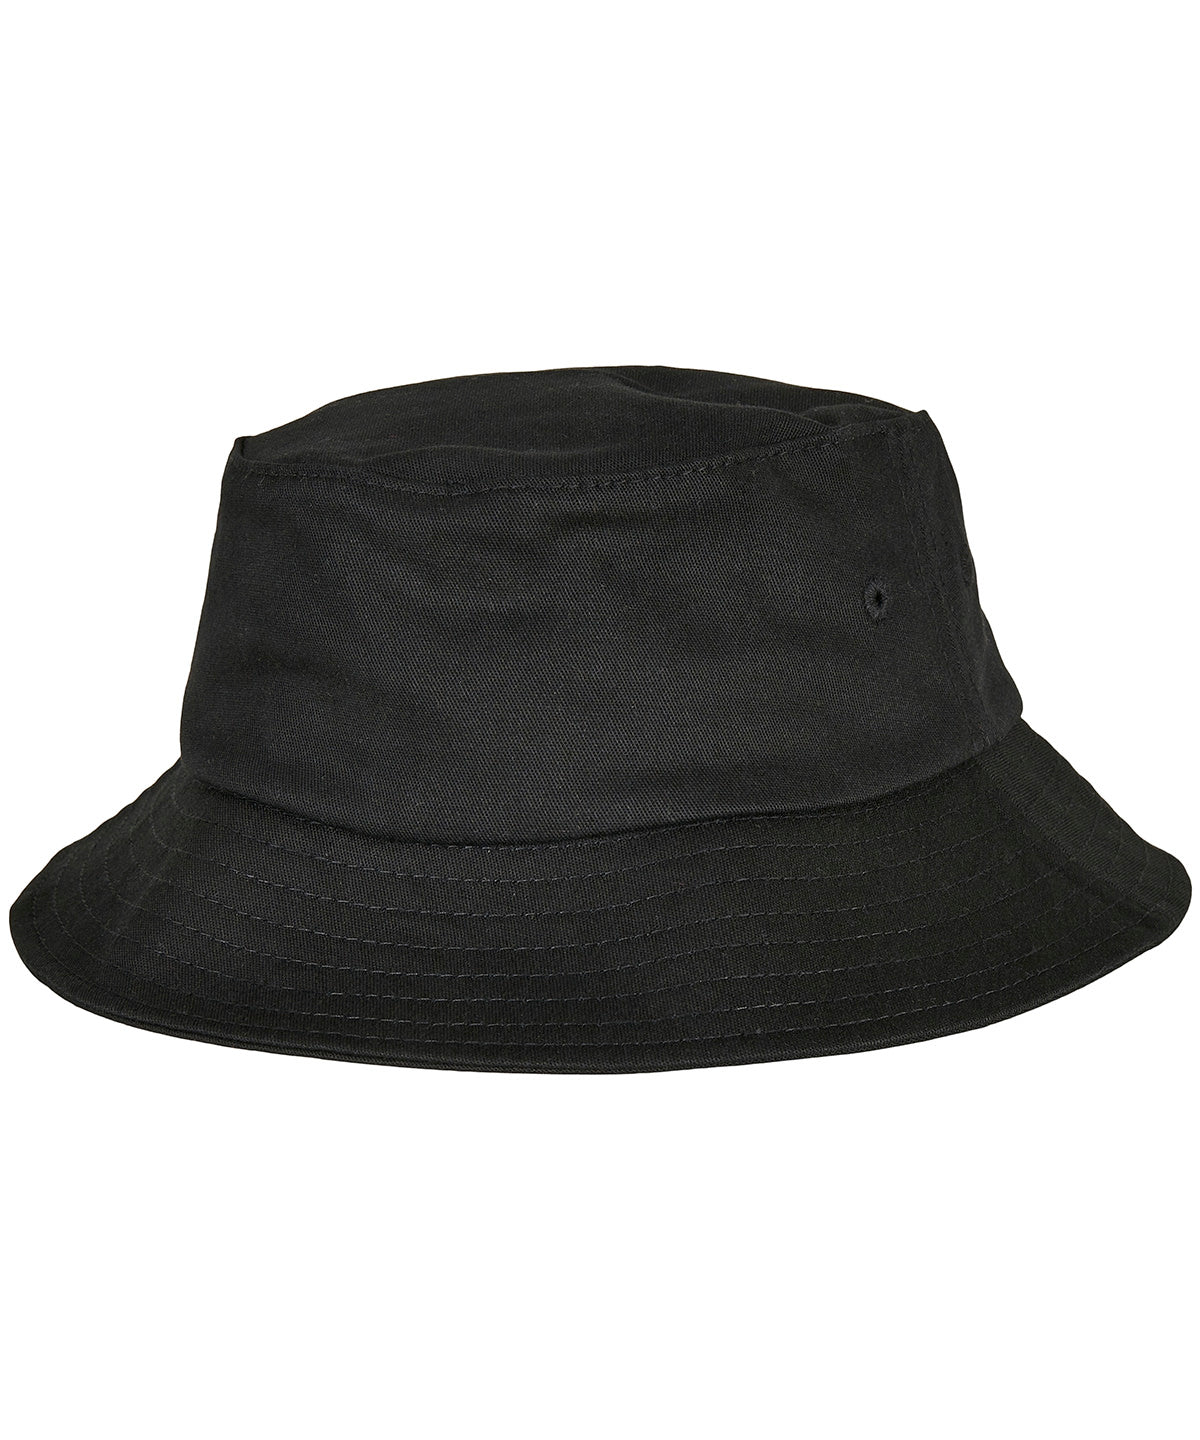 Húfur - Kids Flexfit Cotton Twill Bucket Hat